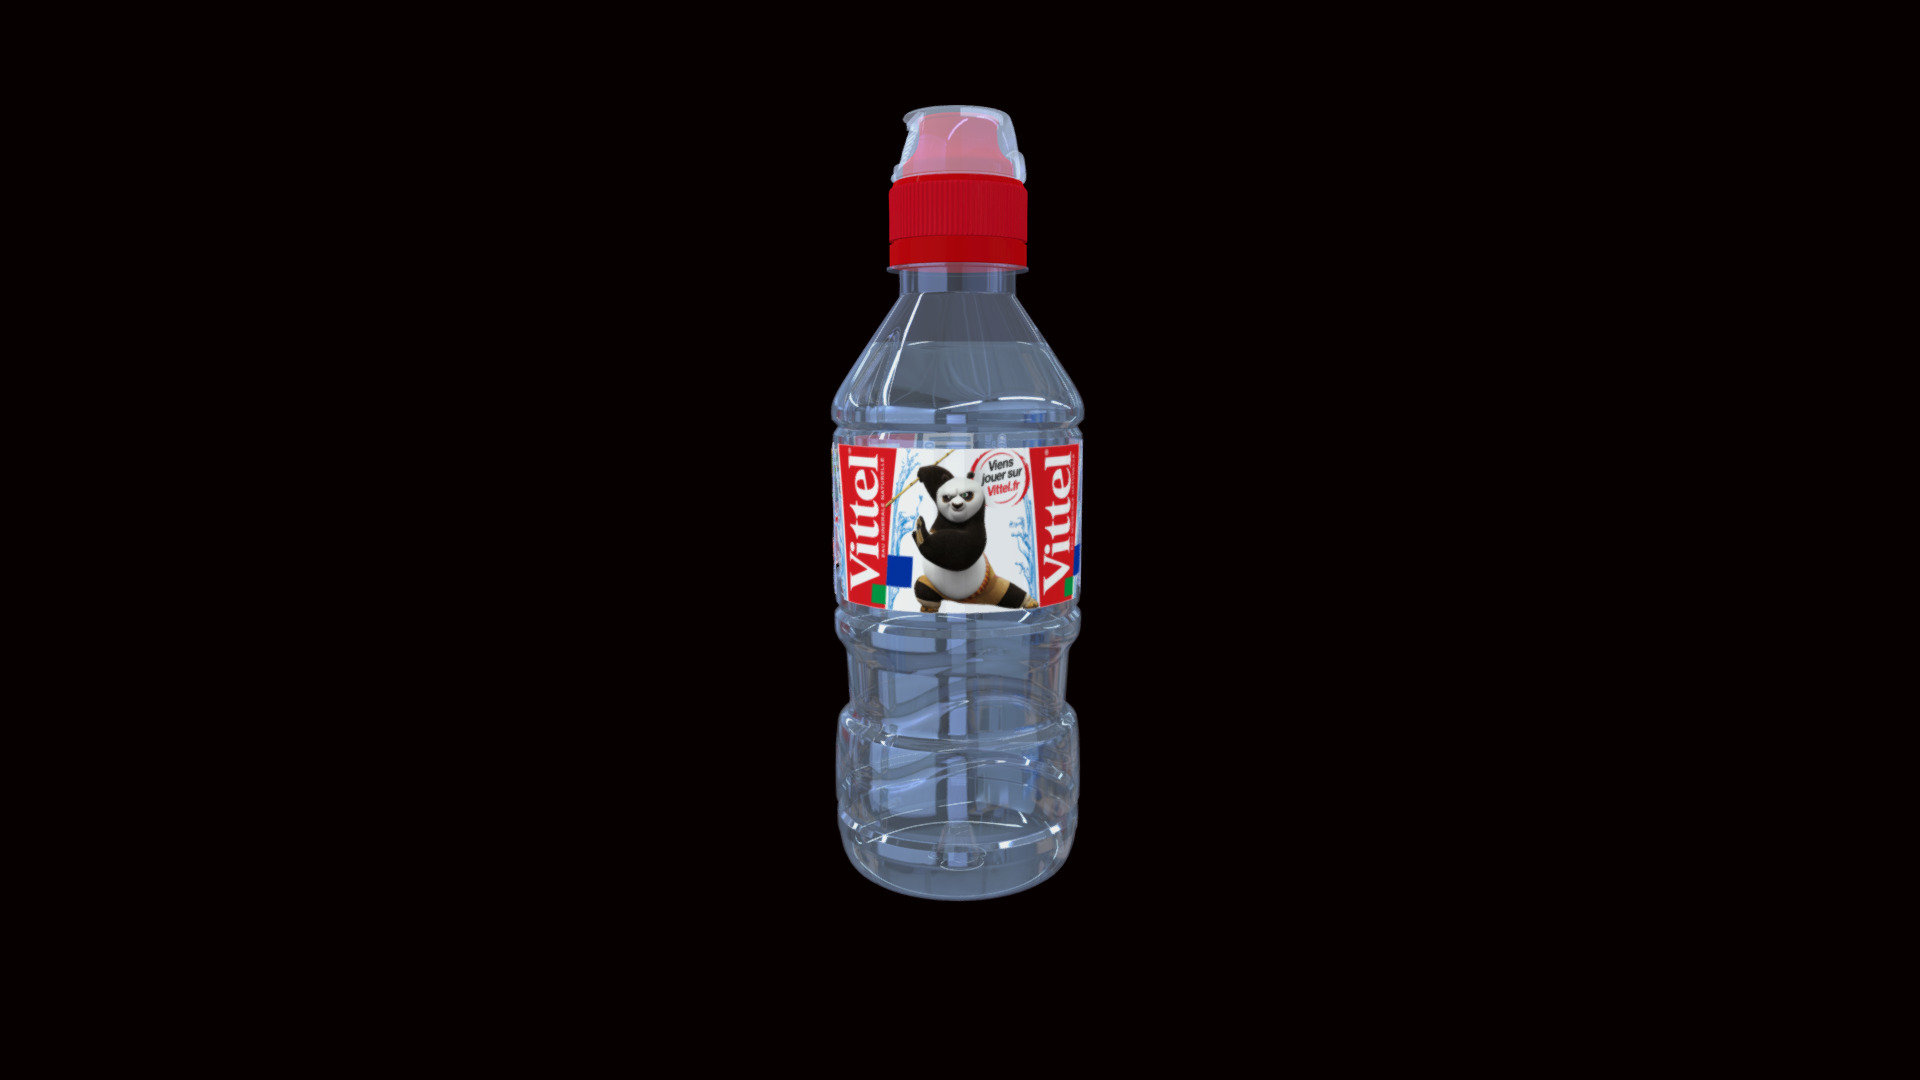 VITTEL FRANCE Bottle made with Strata - WATER_VITTEL_BOTTLE_33cl - 3D model by studiofm 3d model